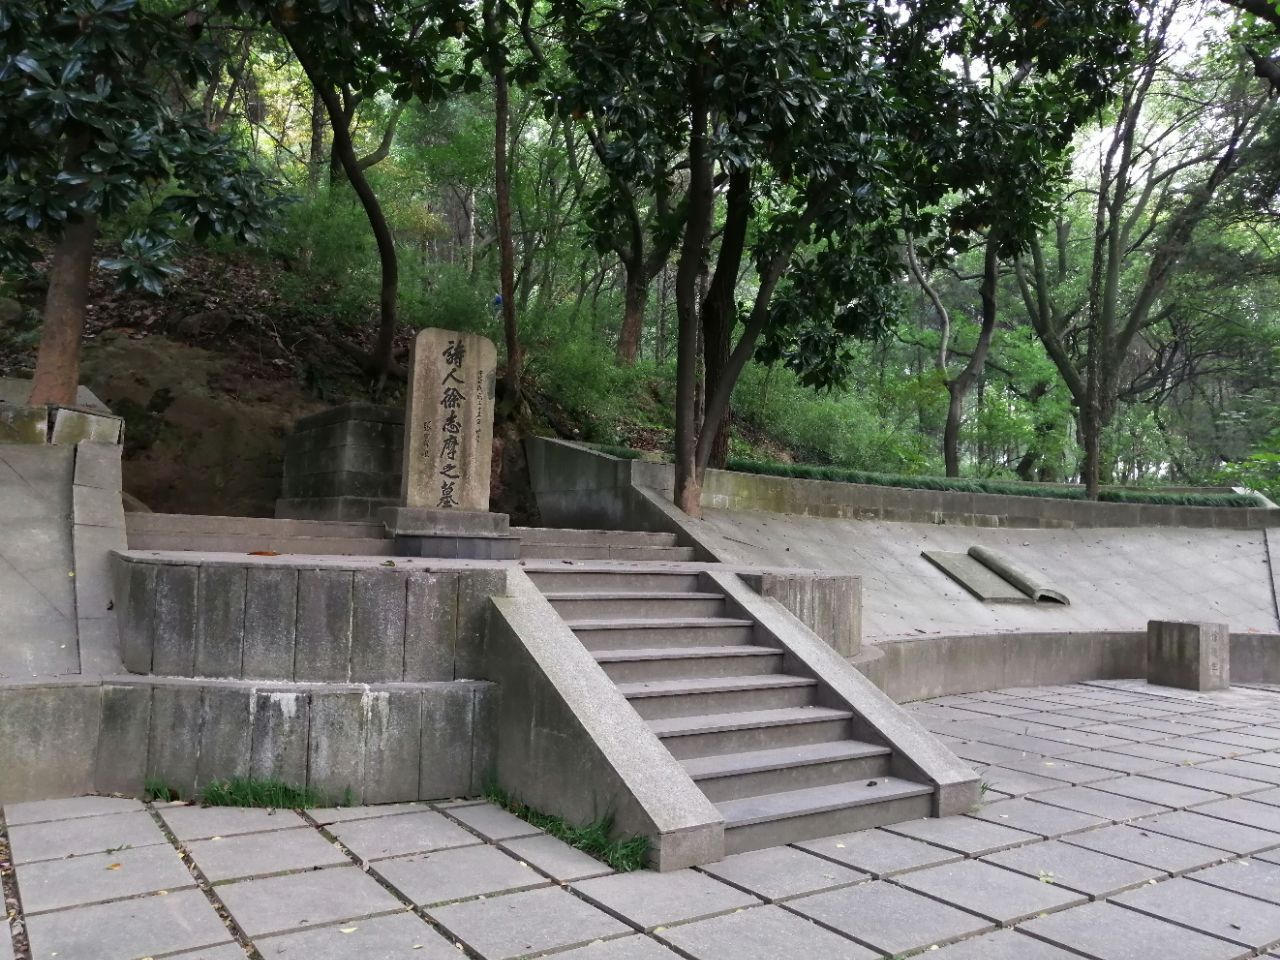 西山公园xishan park(tomb of xu zhimo)